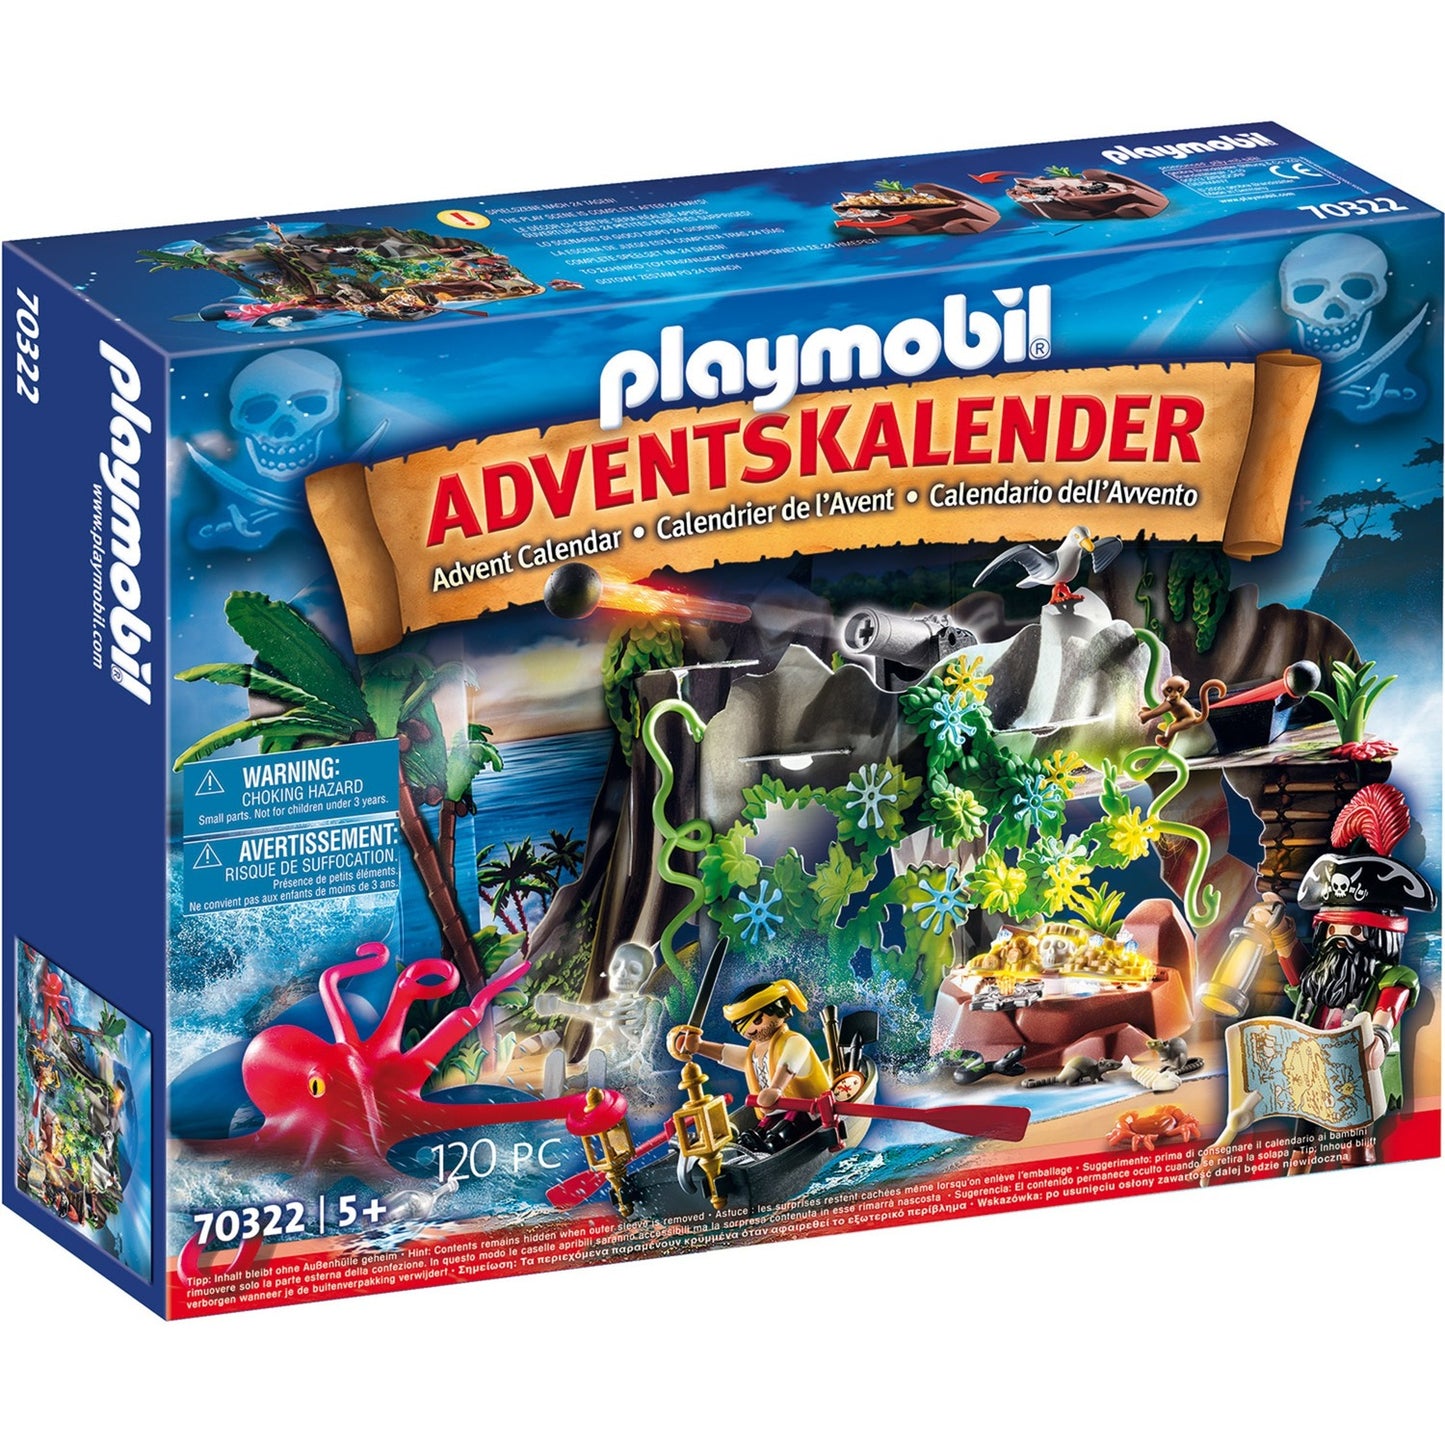 Caccia al calendario dell'avvento Playmobil nel pirata inha